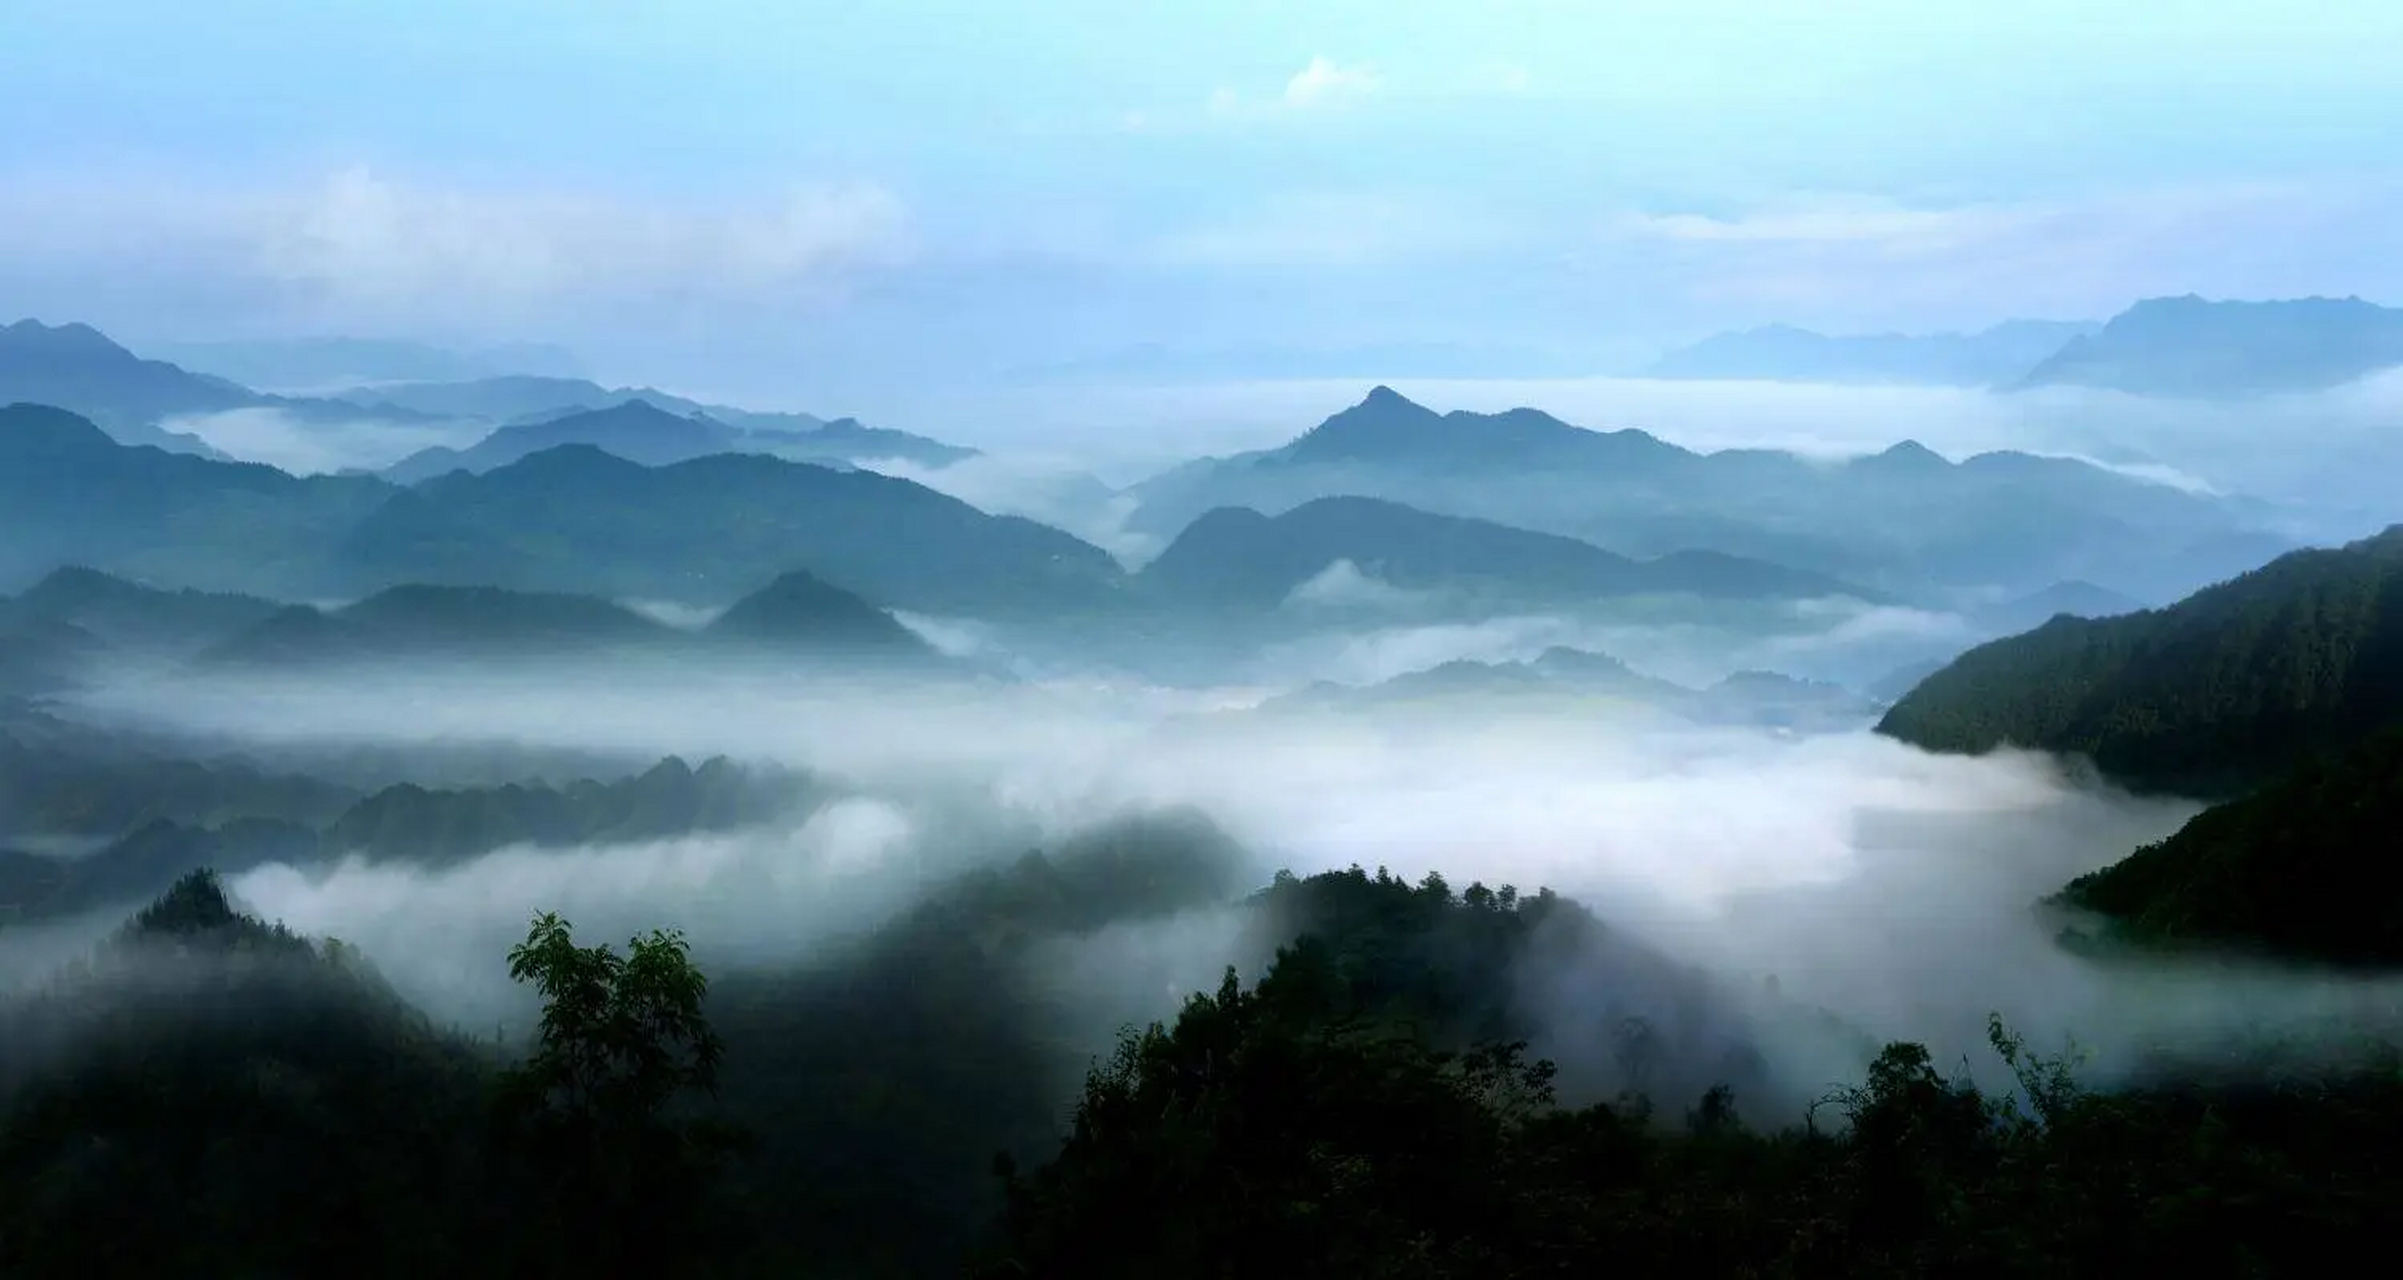 古蔺普照山:这里的海高度是1700米,这里也是进入黄荆风景区的门户之